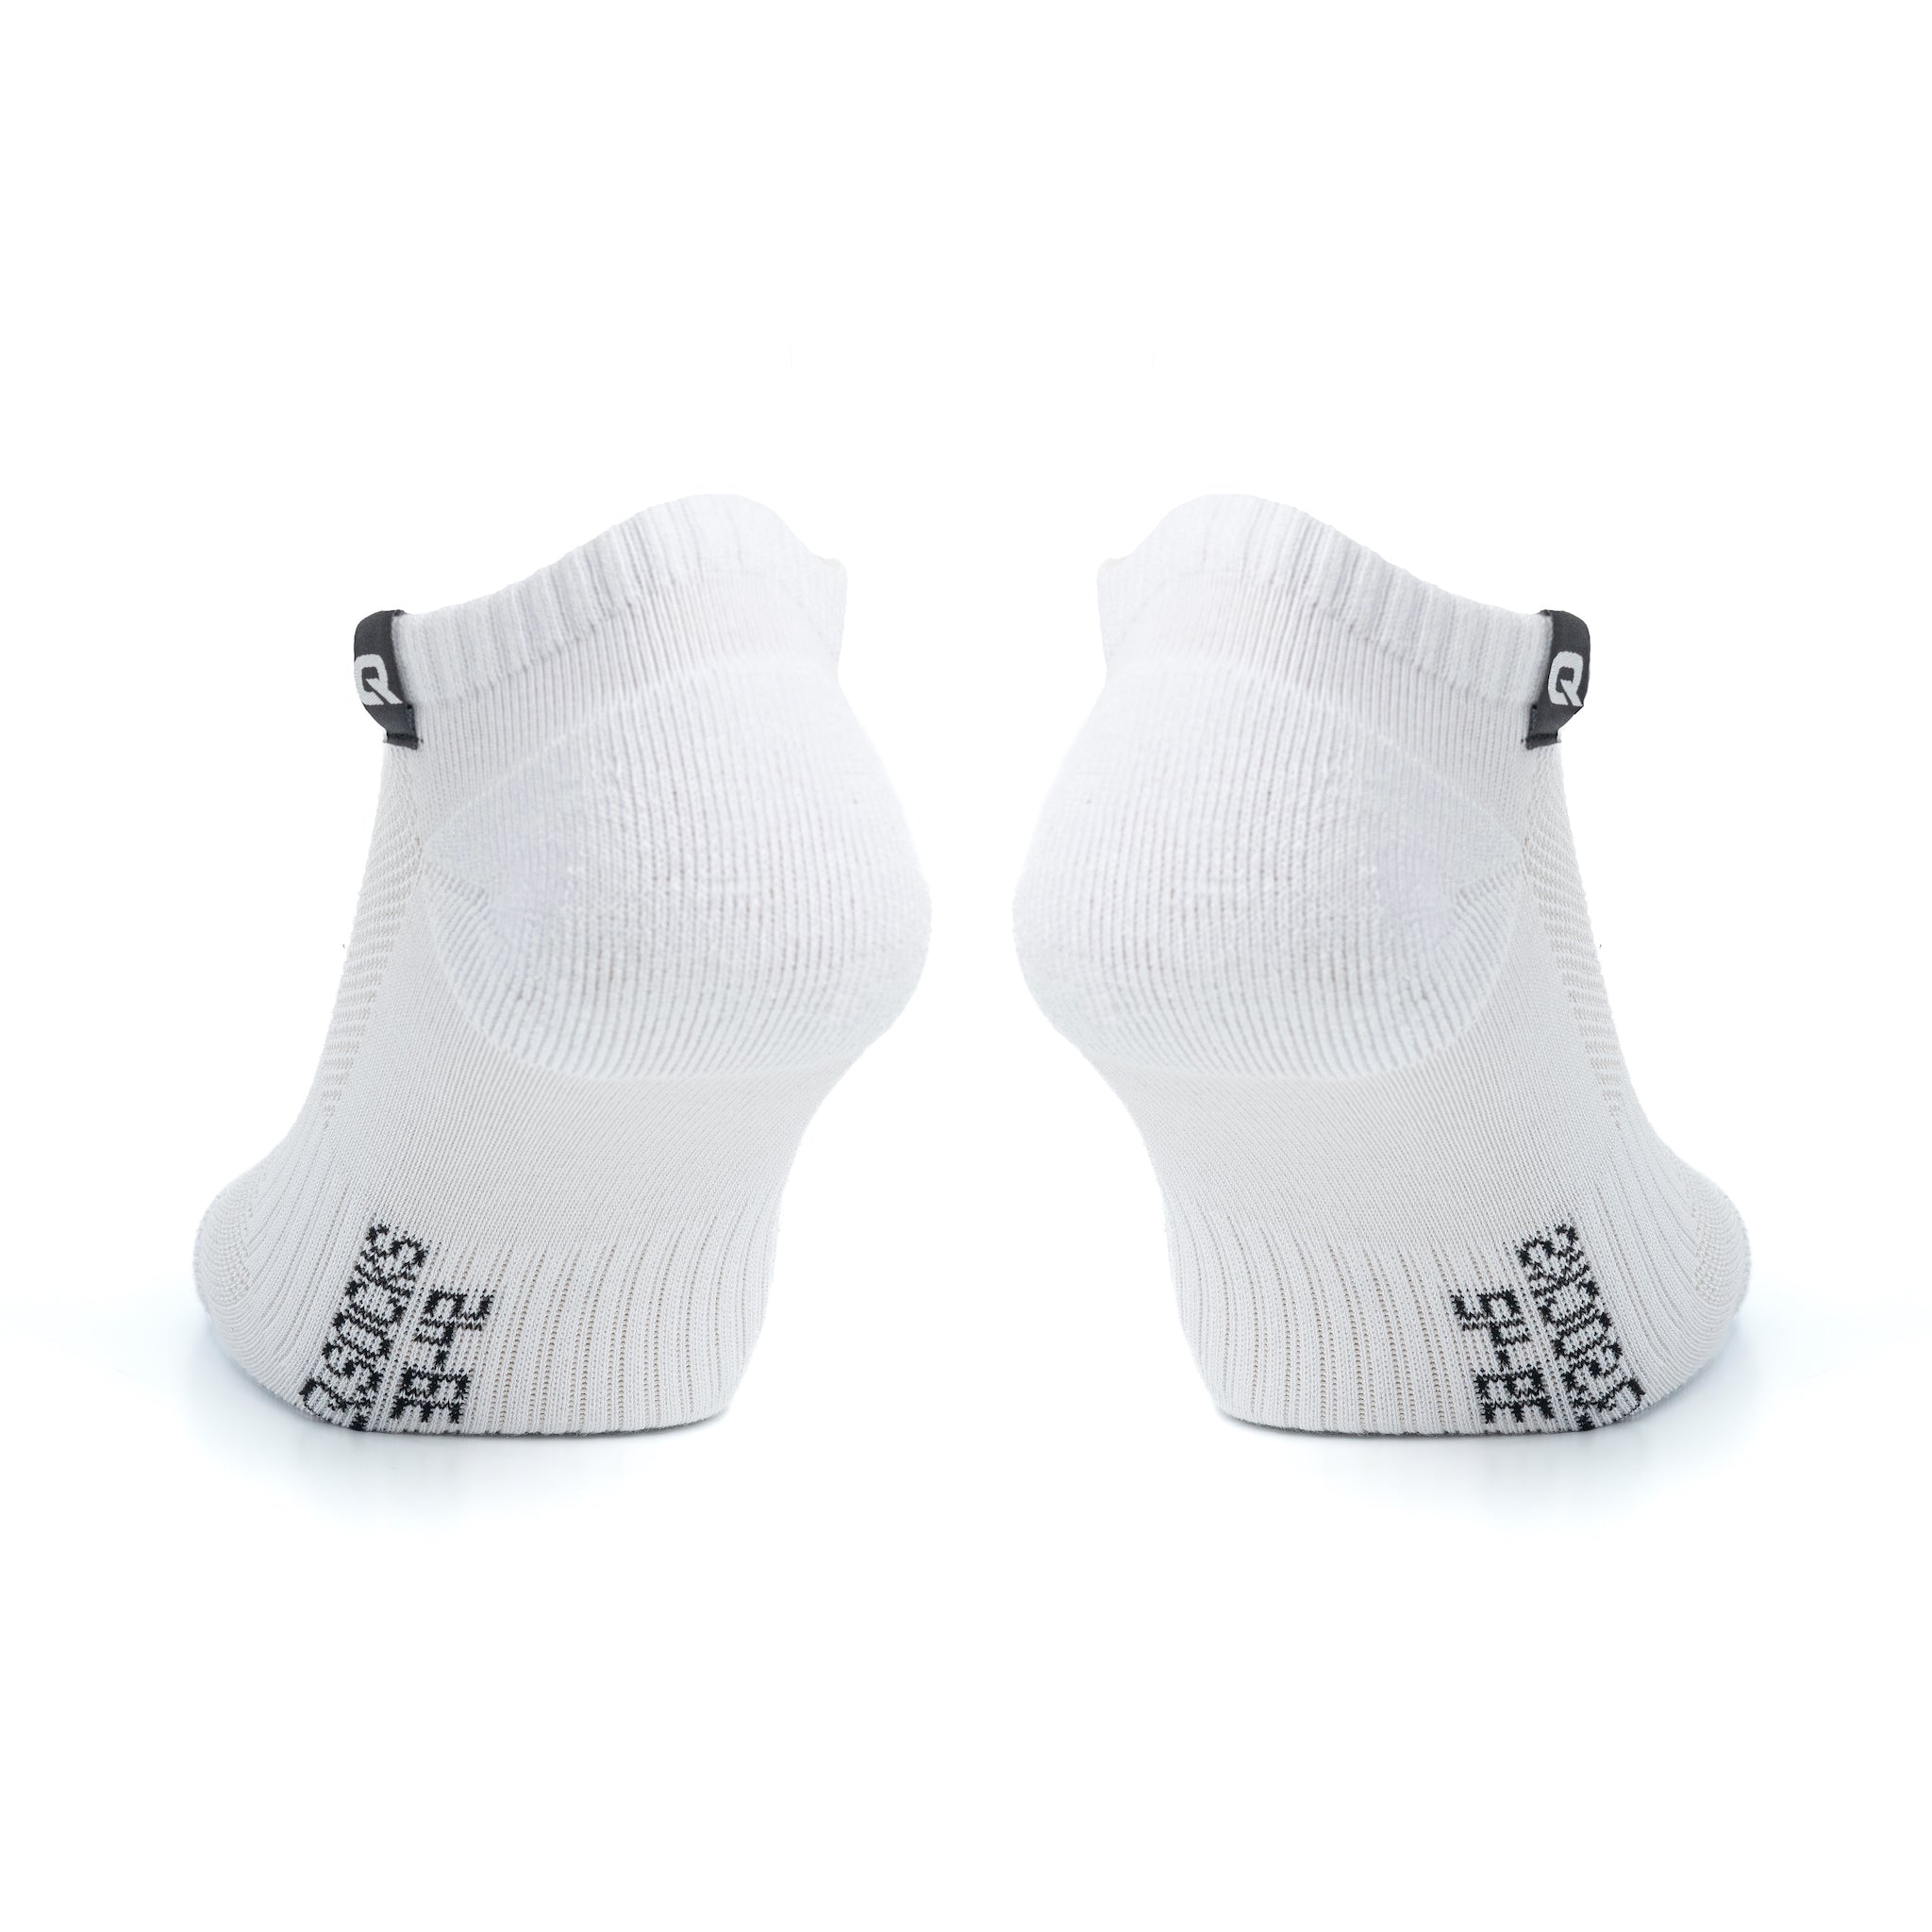 Sneaker Socken in | Sneaker Weiß Schwarz Socken Grau 6 Paar und | QSocks